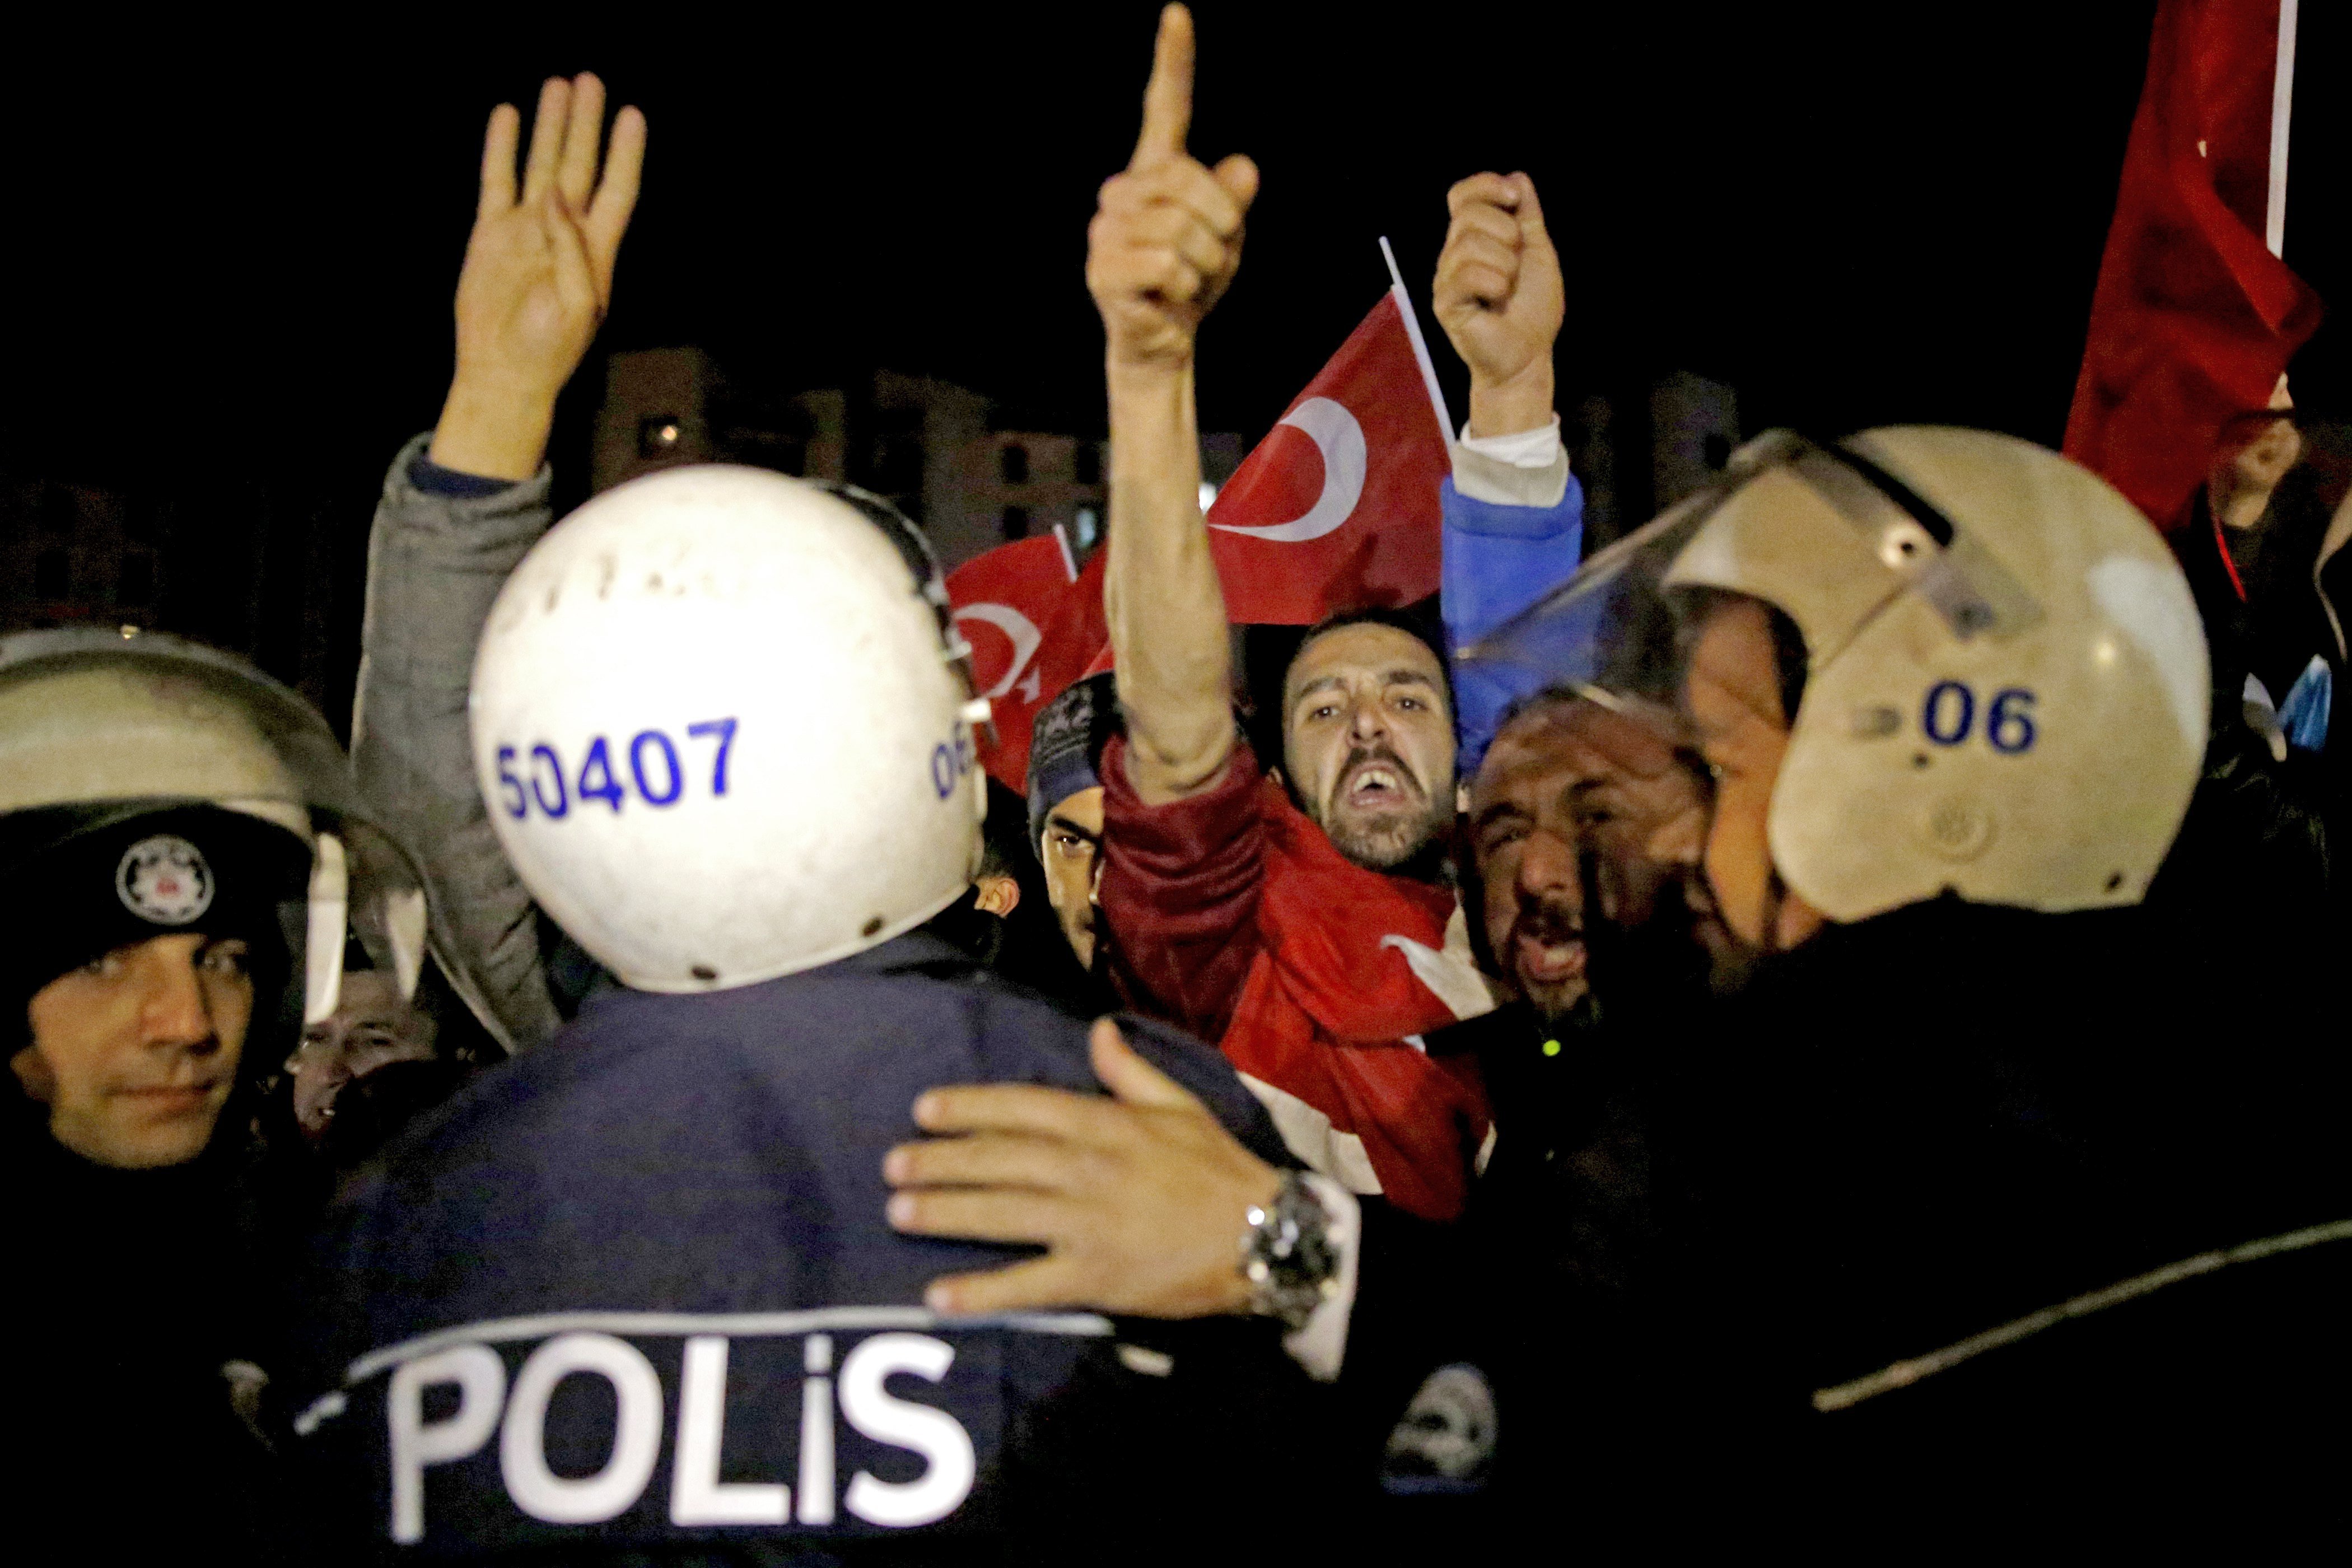 Crisis diplomática entre los Países Bajos y Turquía